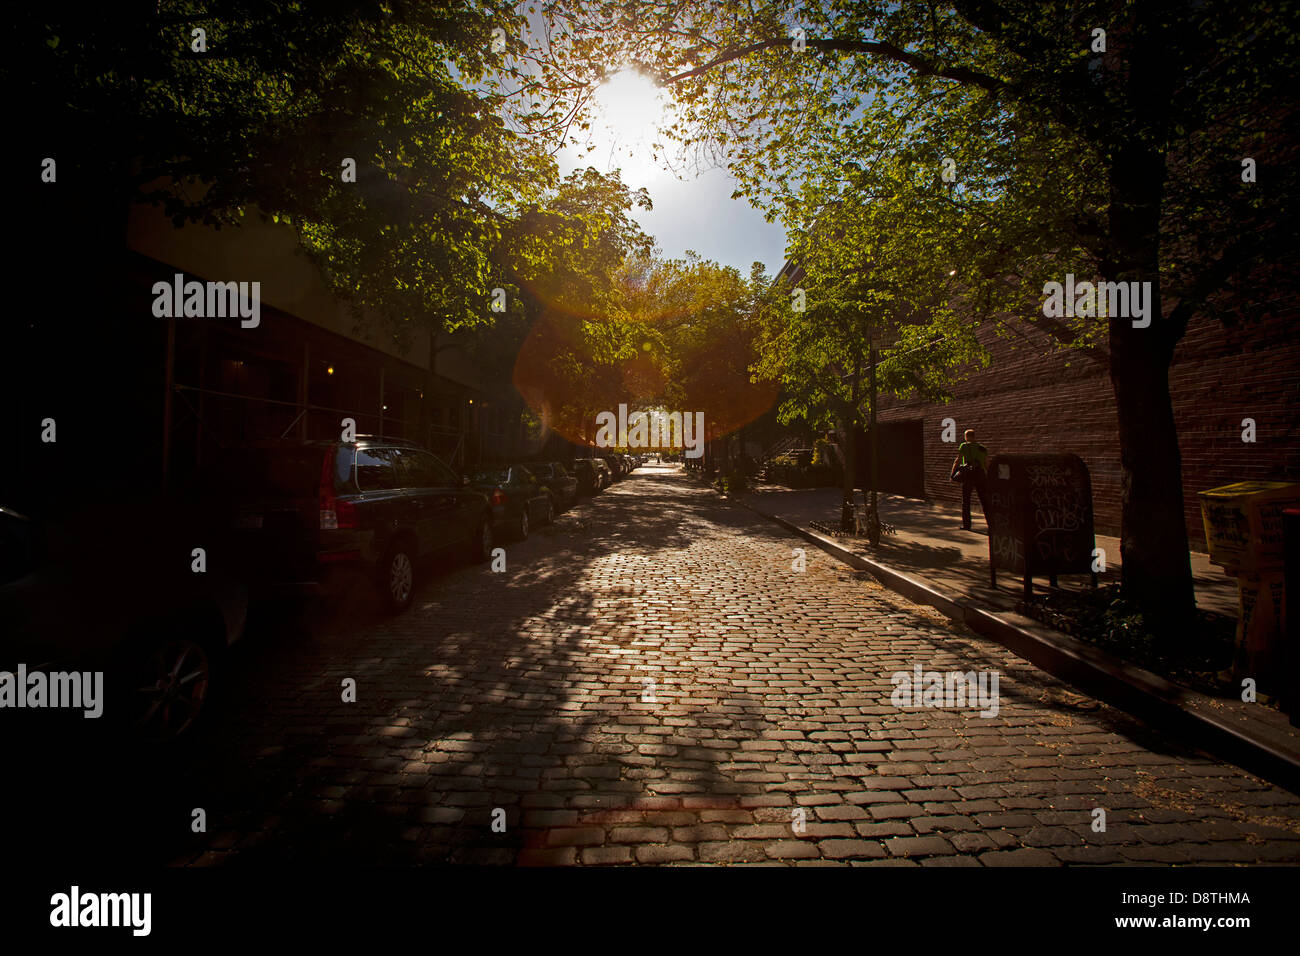 Cobble stone street, niedriger, Manhattan, New York, Vereinigte Staaten von Amerika Stockfoto